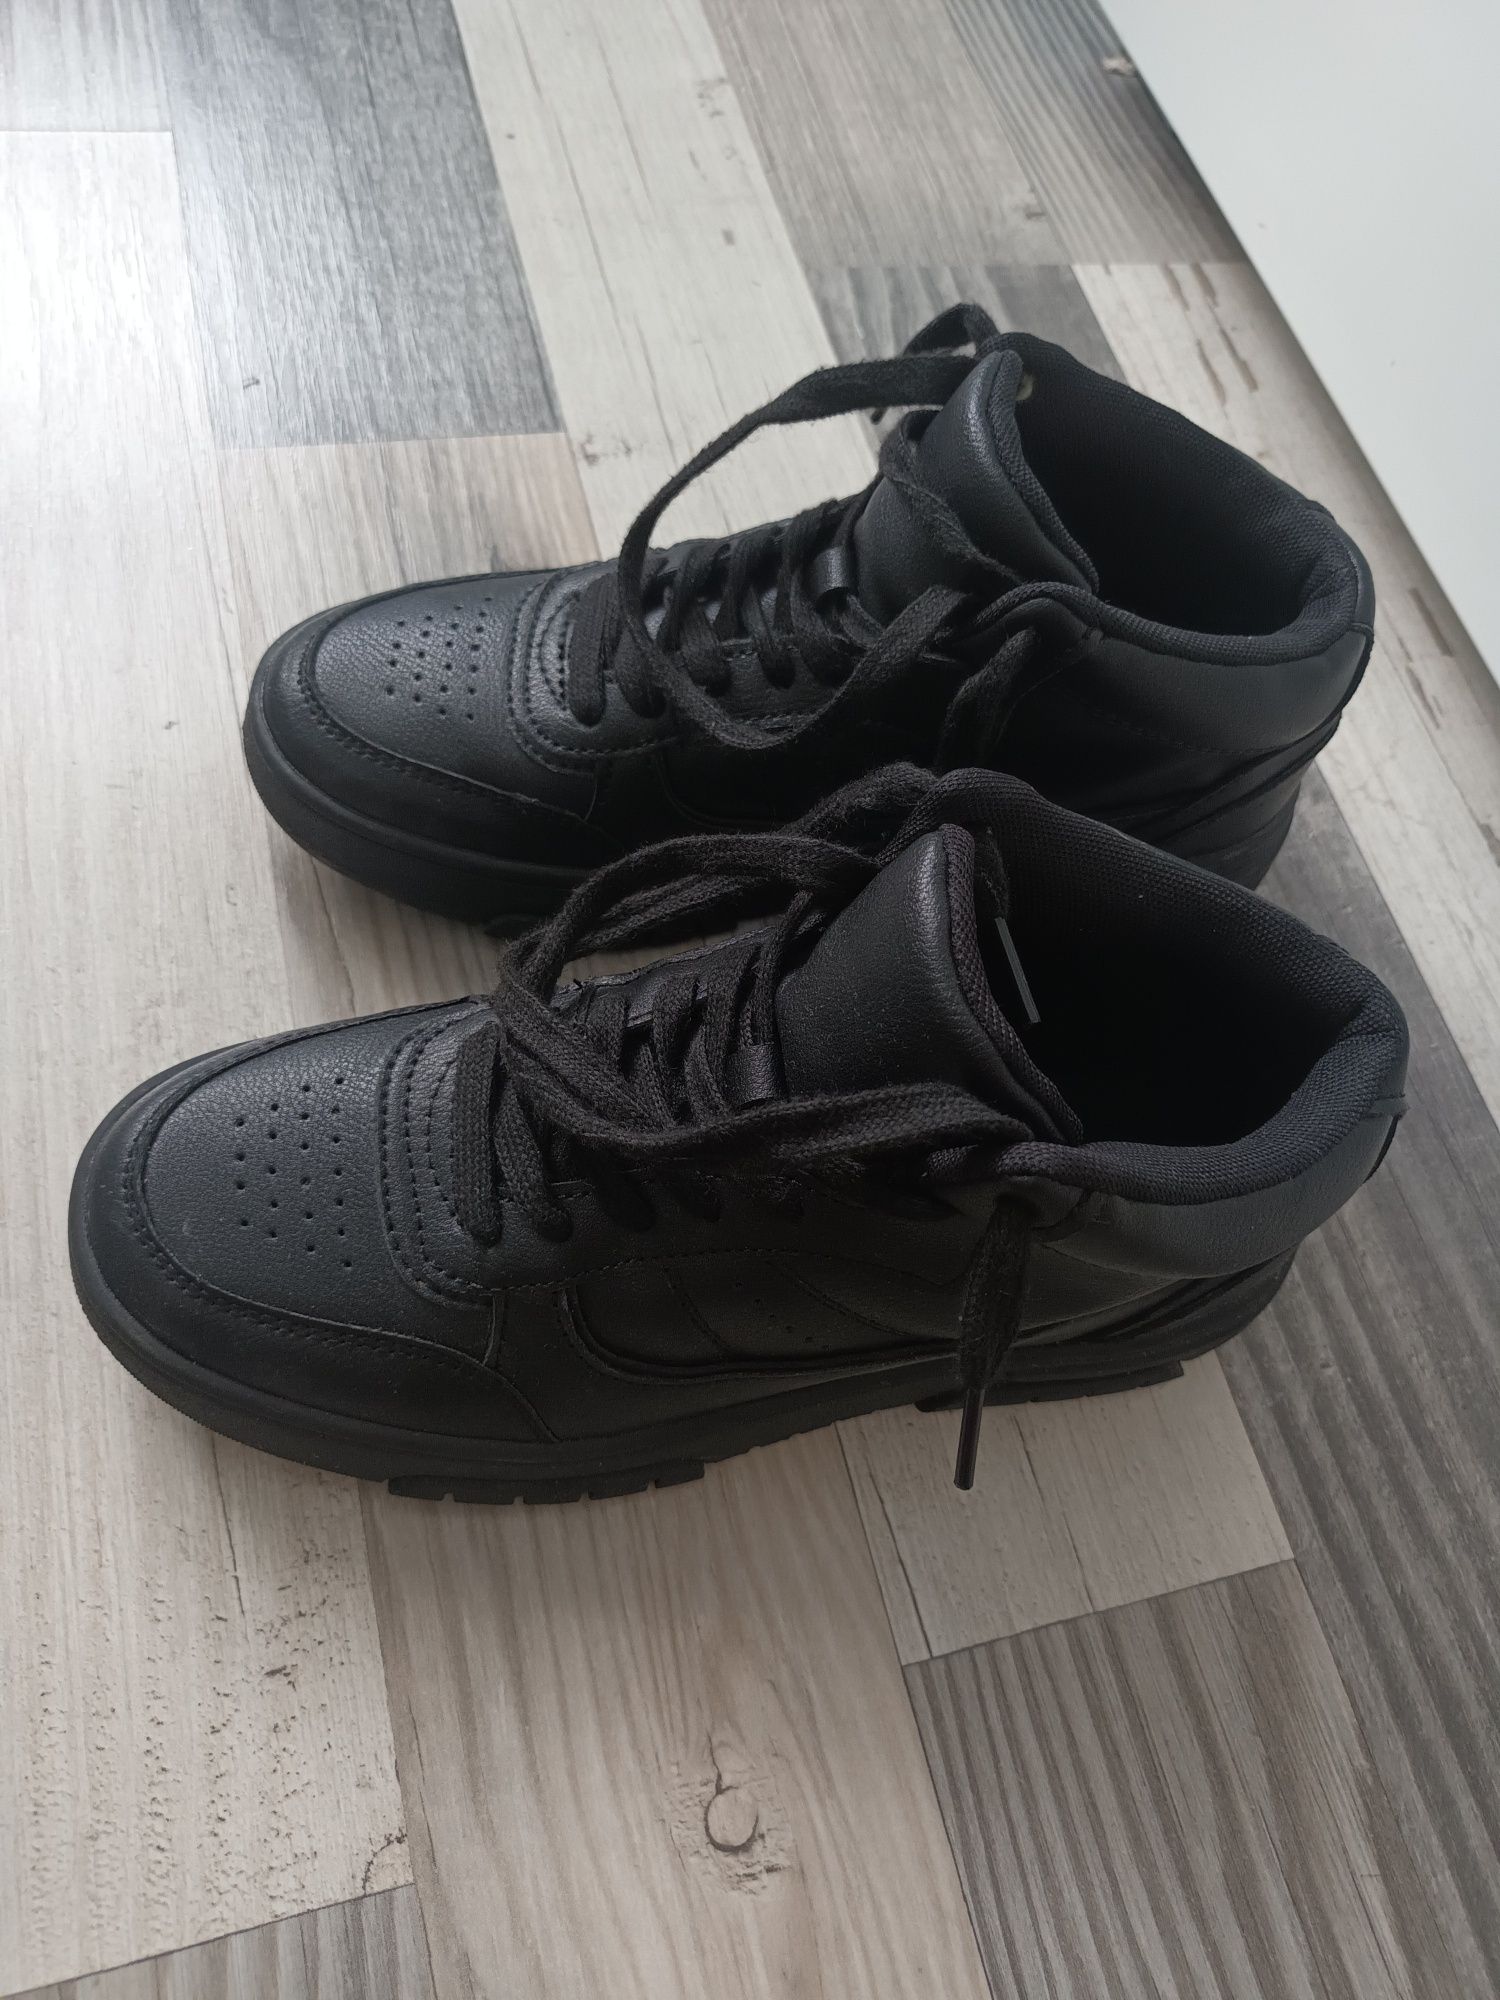 Jak nowe sneakersy Ccc 37(24cm)